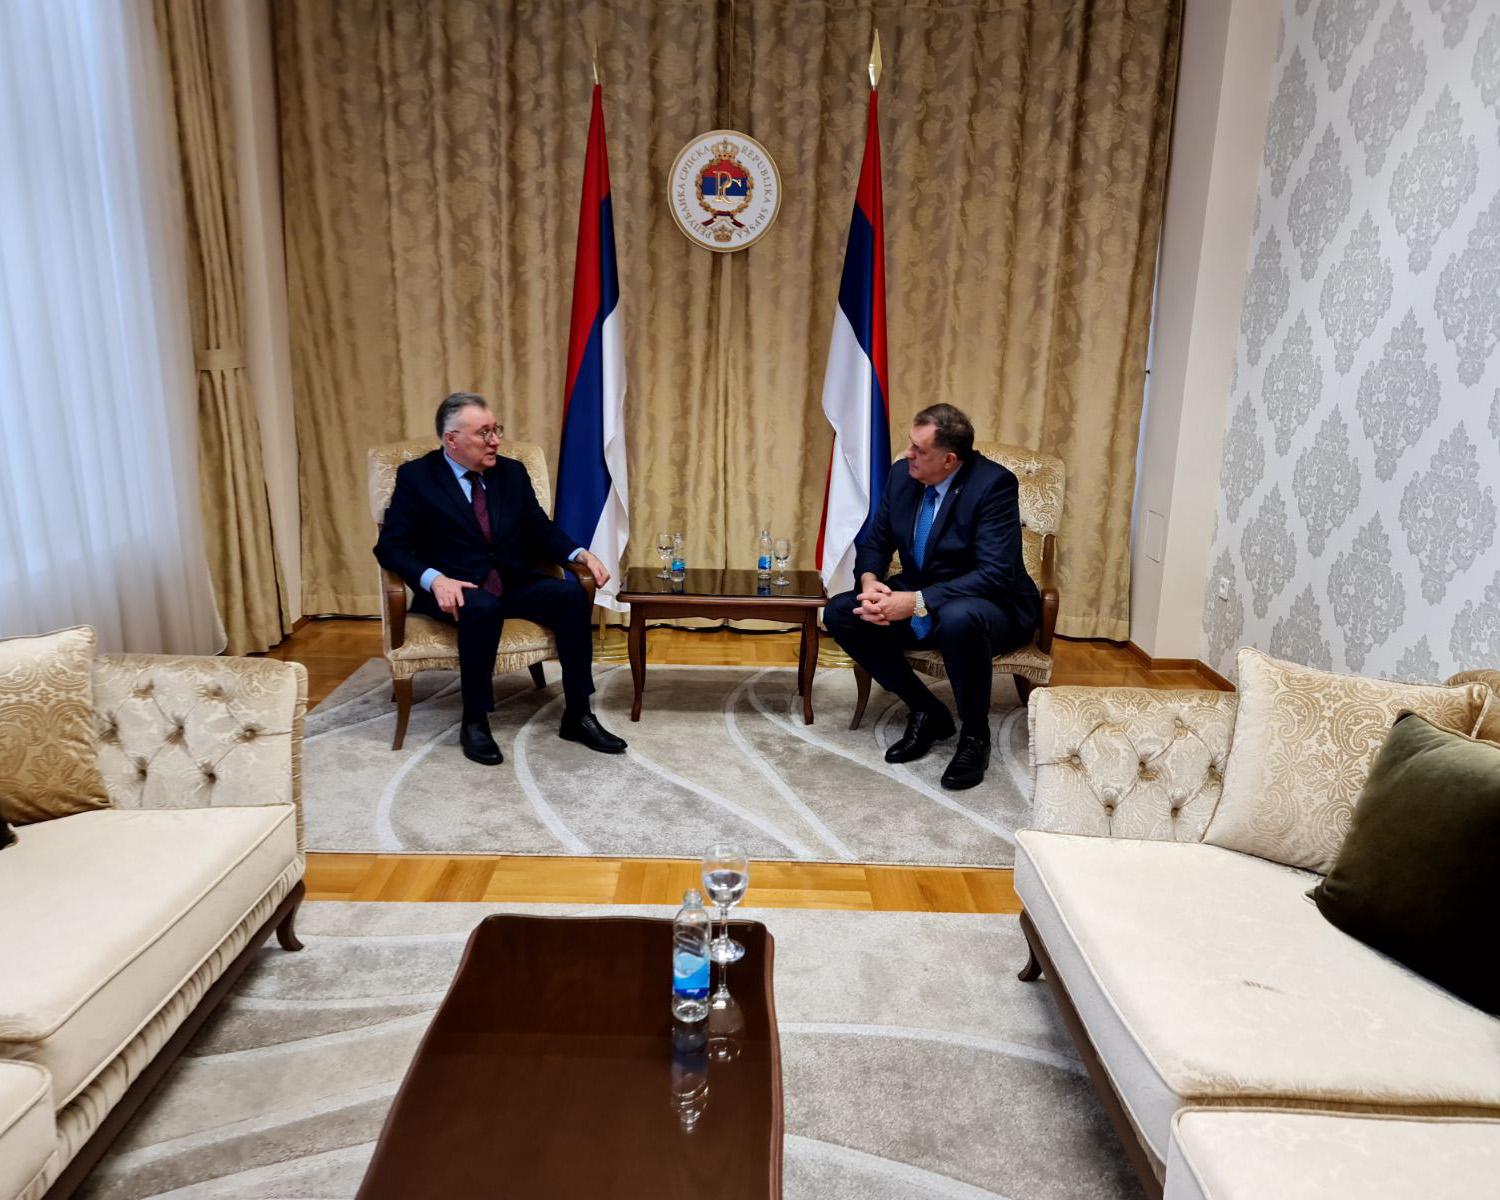 O čemu su razgovarali: Dodik se sastao s ruskim ambasadorom Kalabuhovom